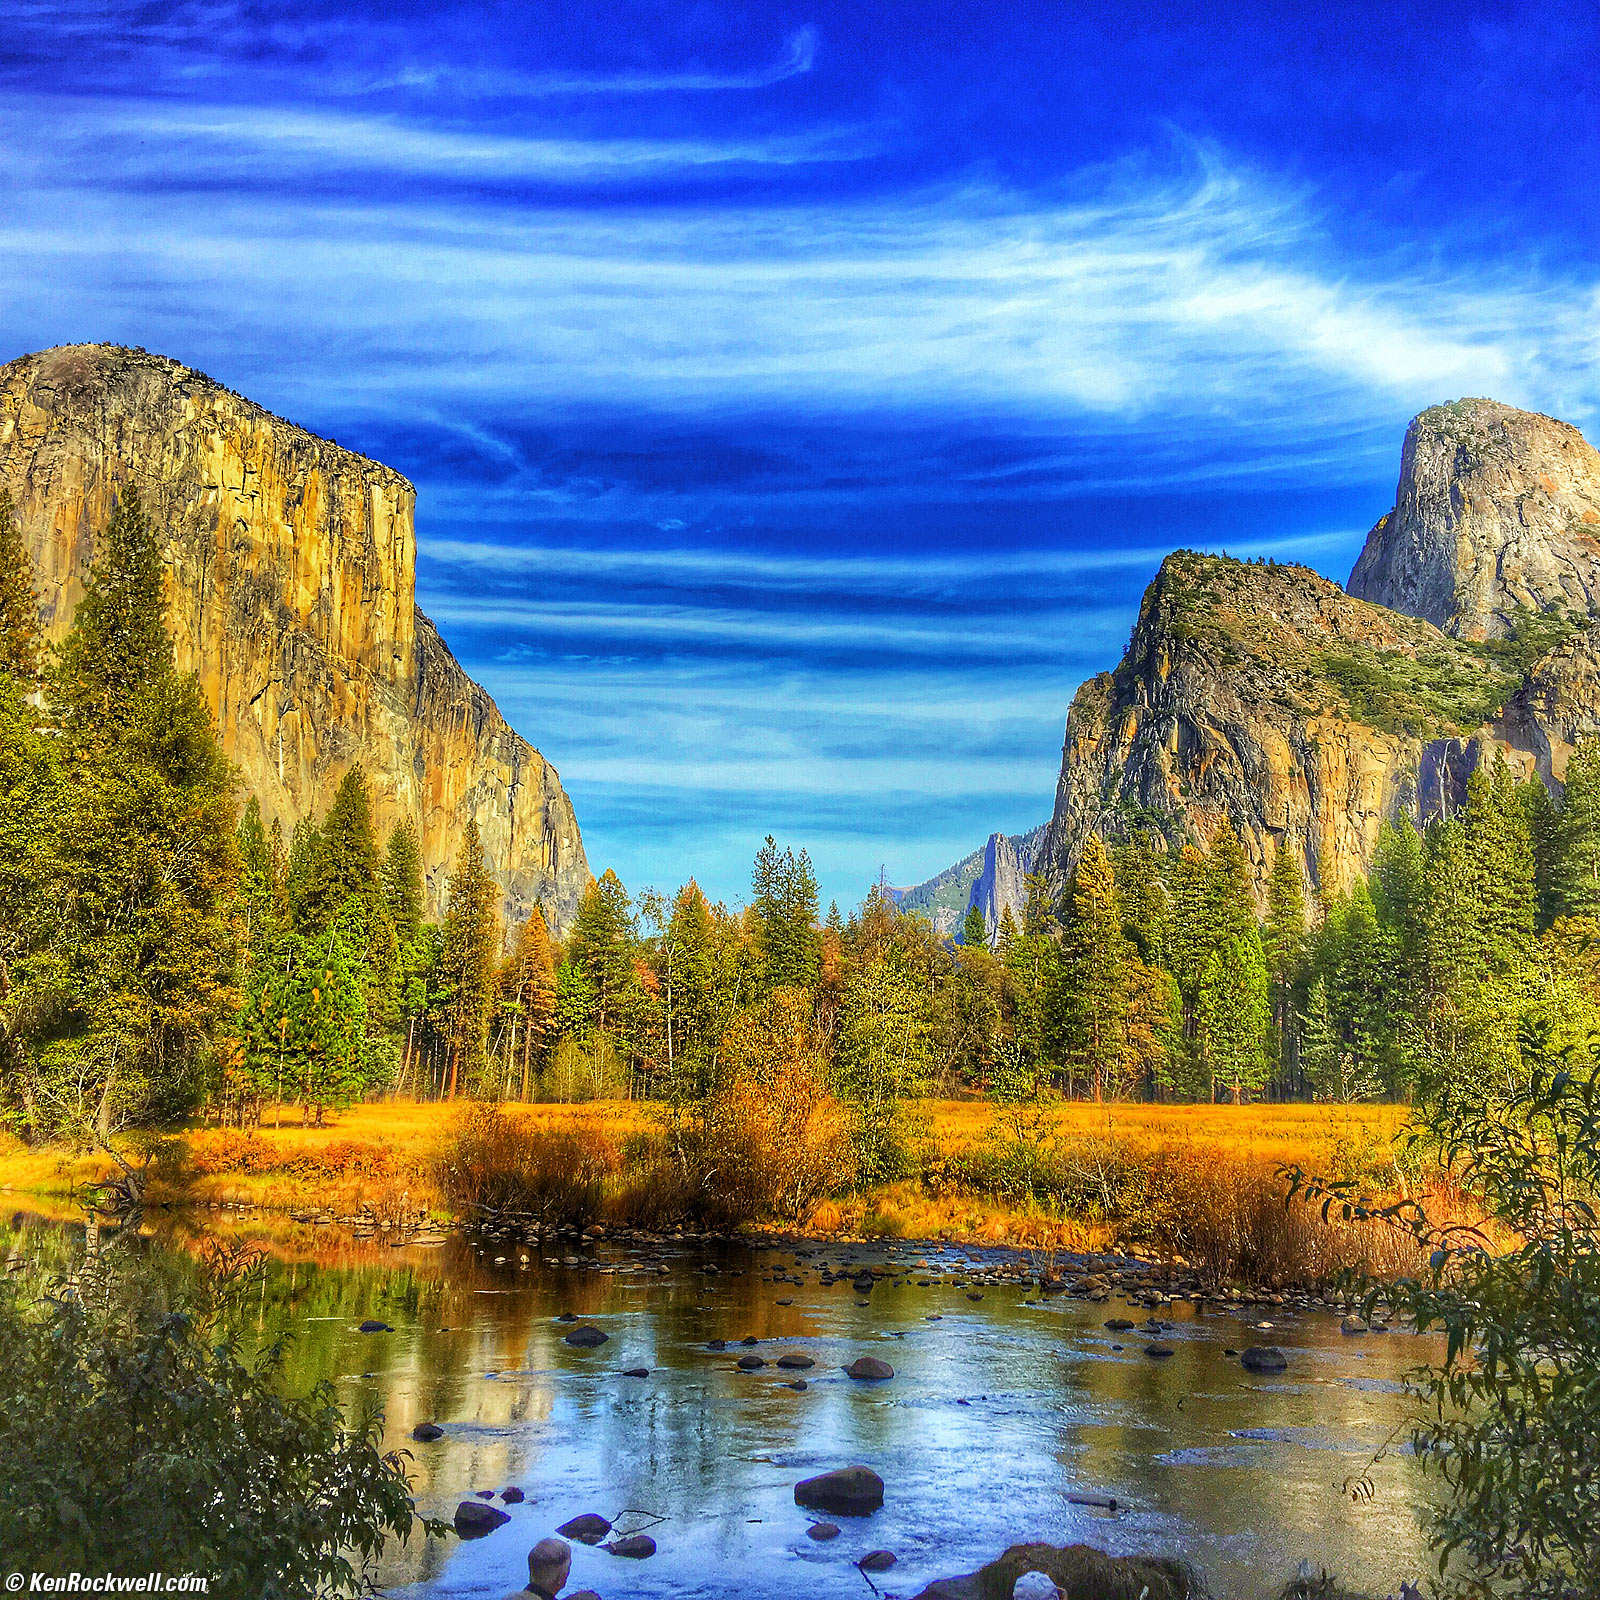 The Eastern Sierra & Yosemite, October 2015